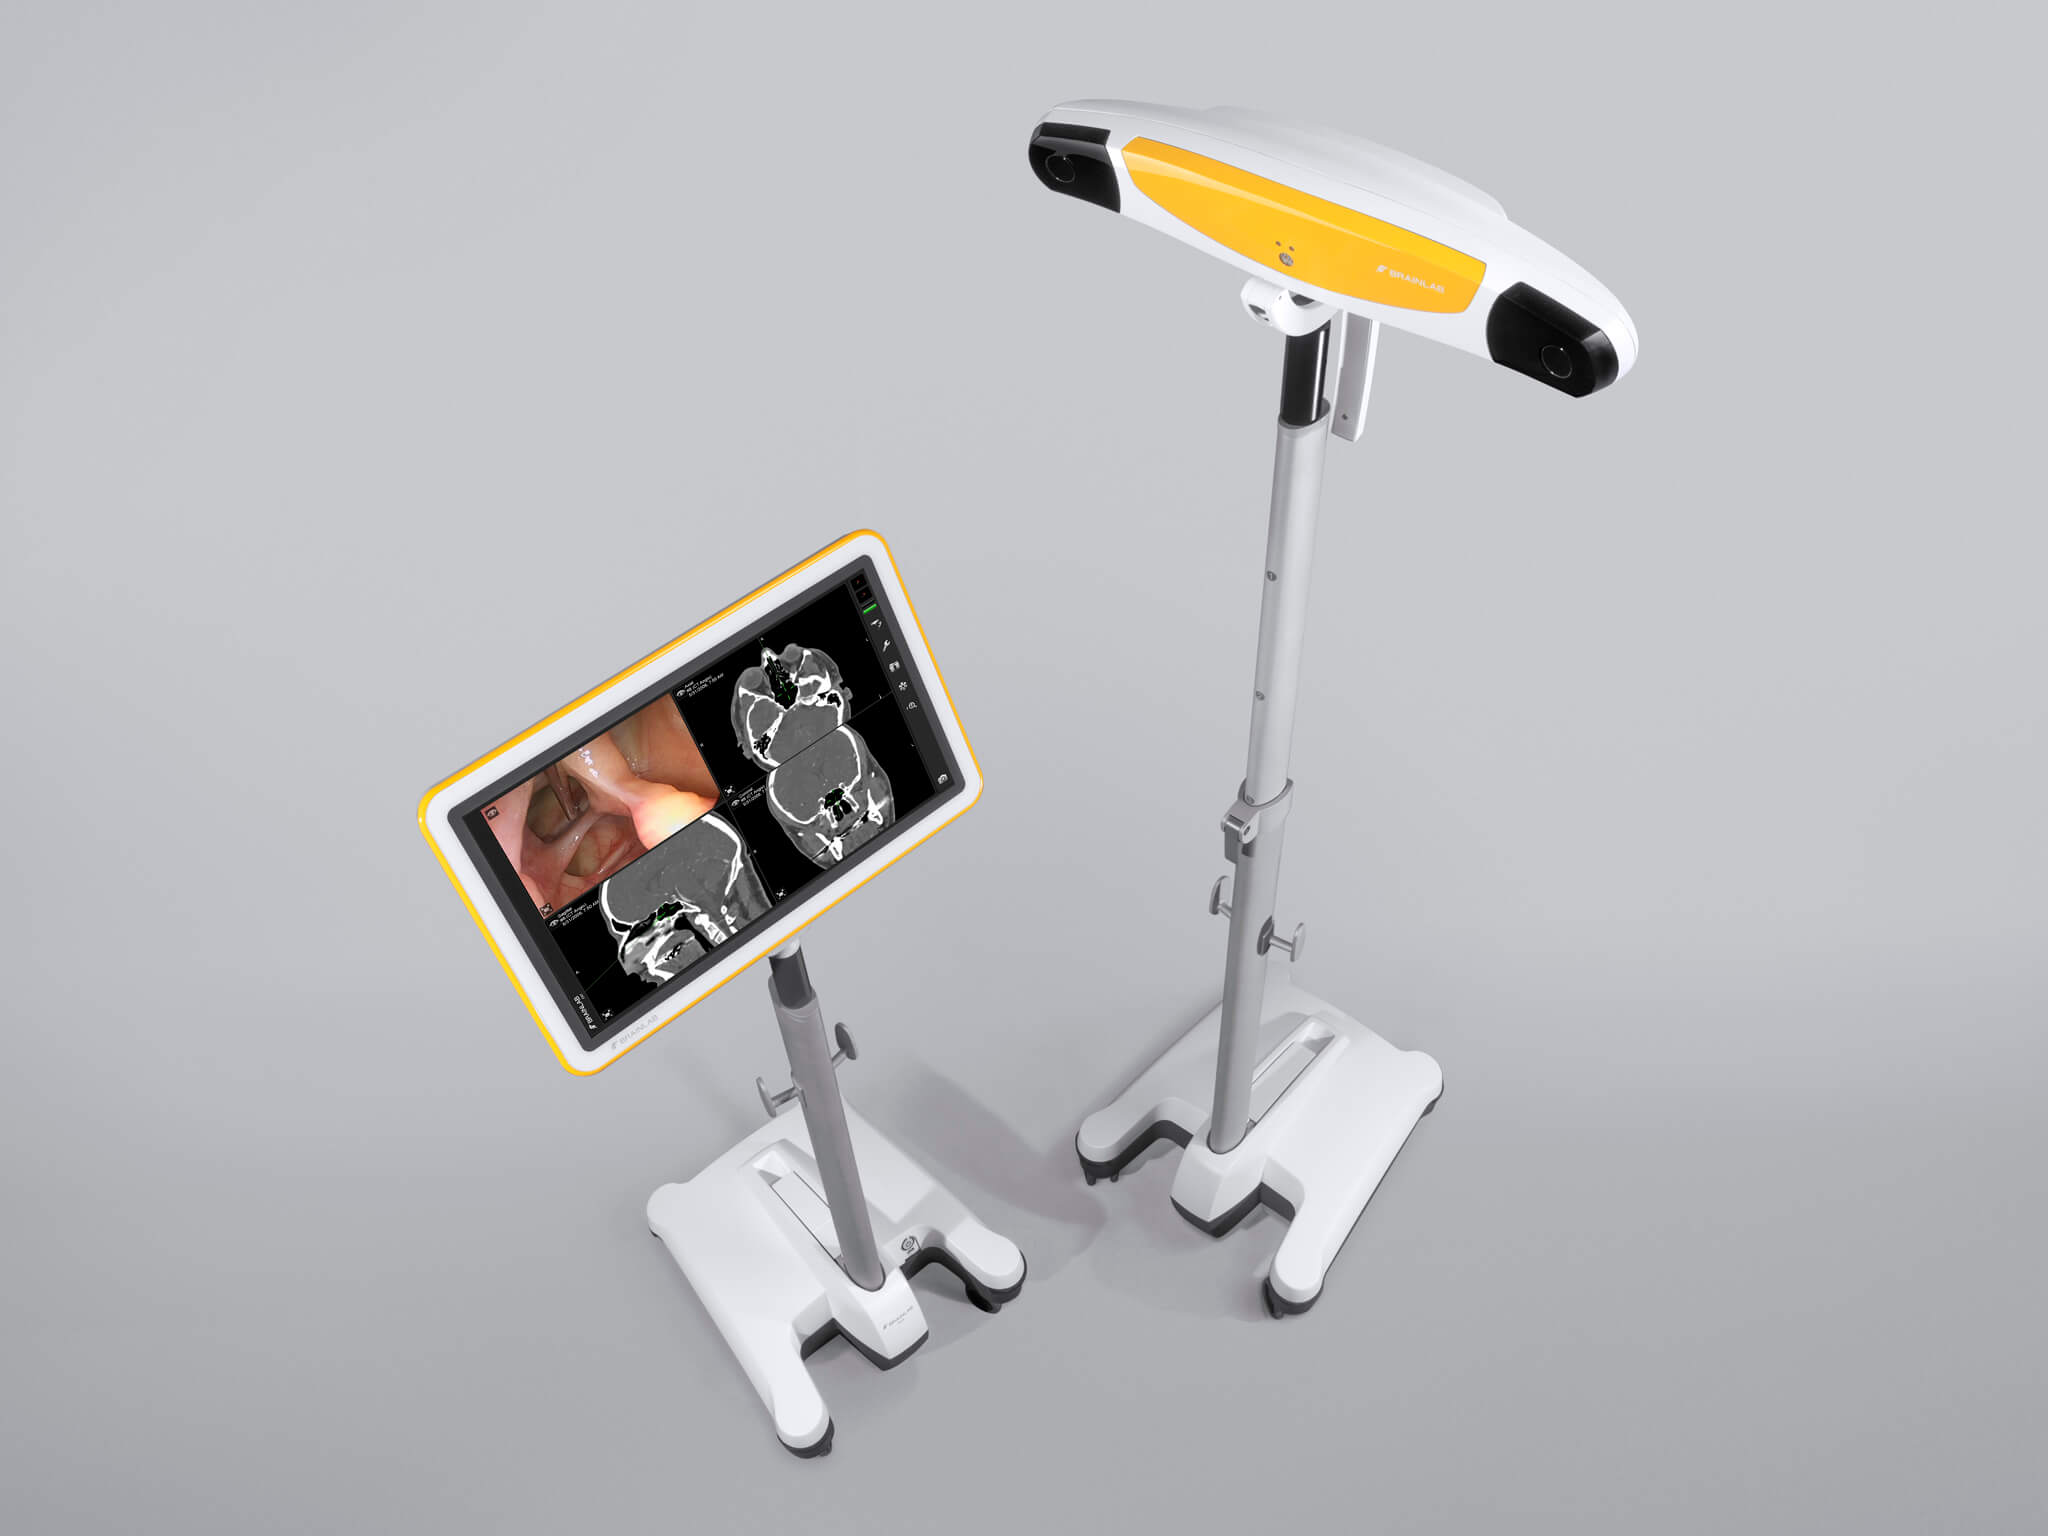 Sistema de navegación quirúrgica Kick con soporte separado para la cámara